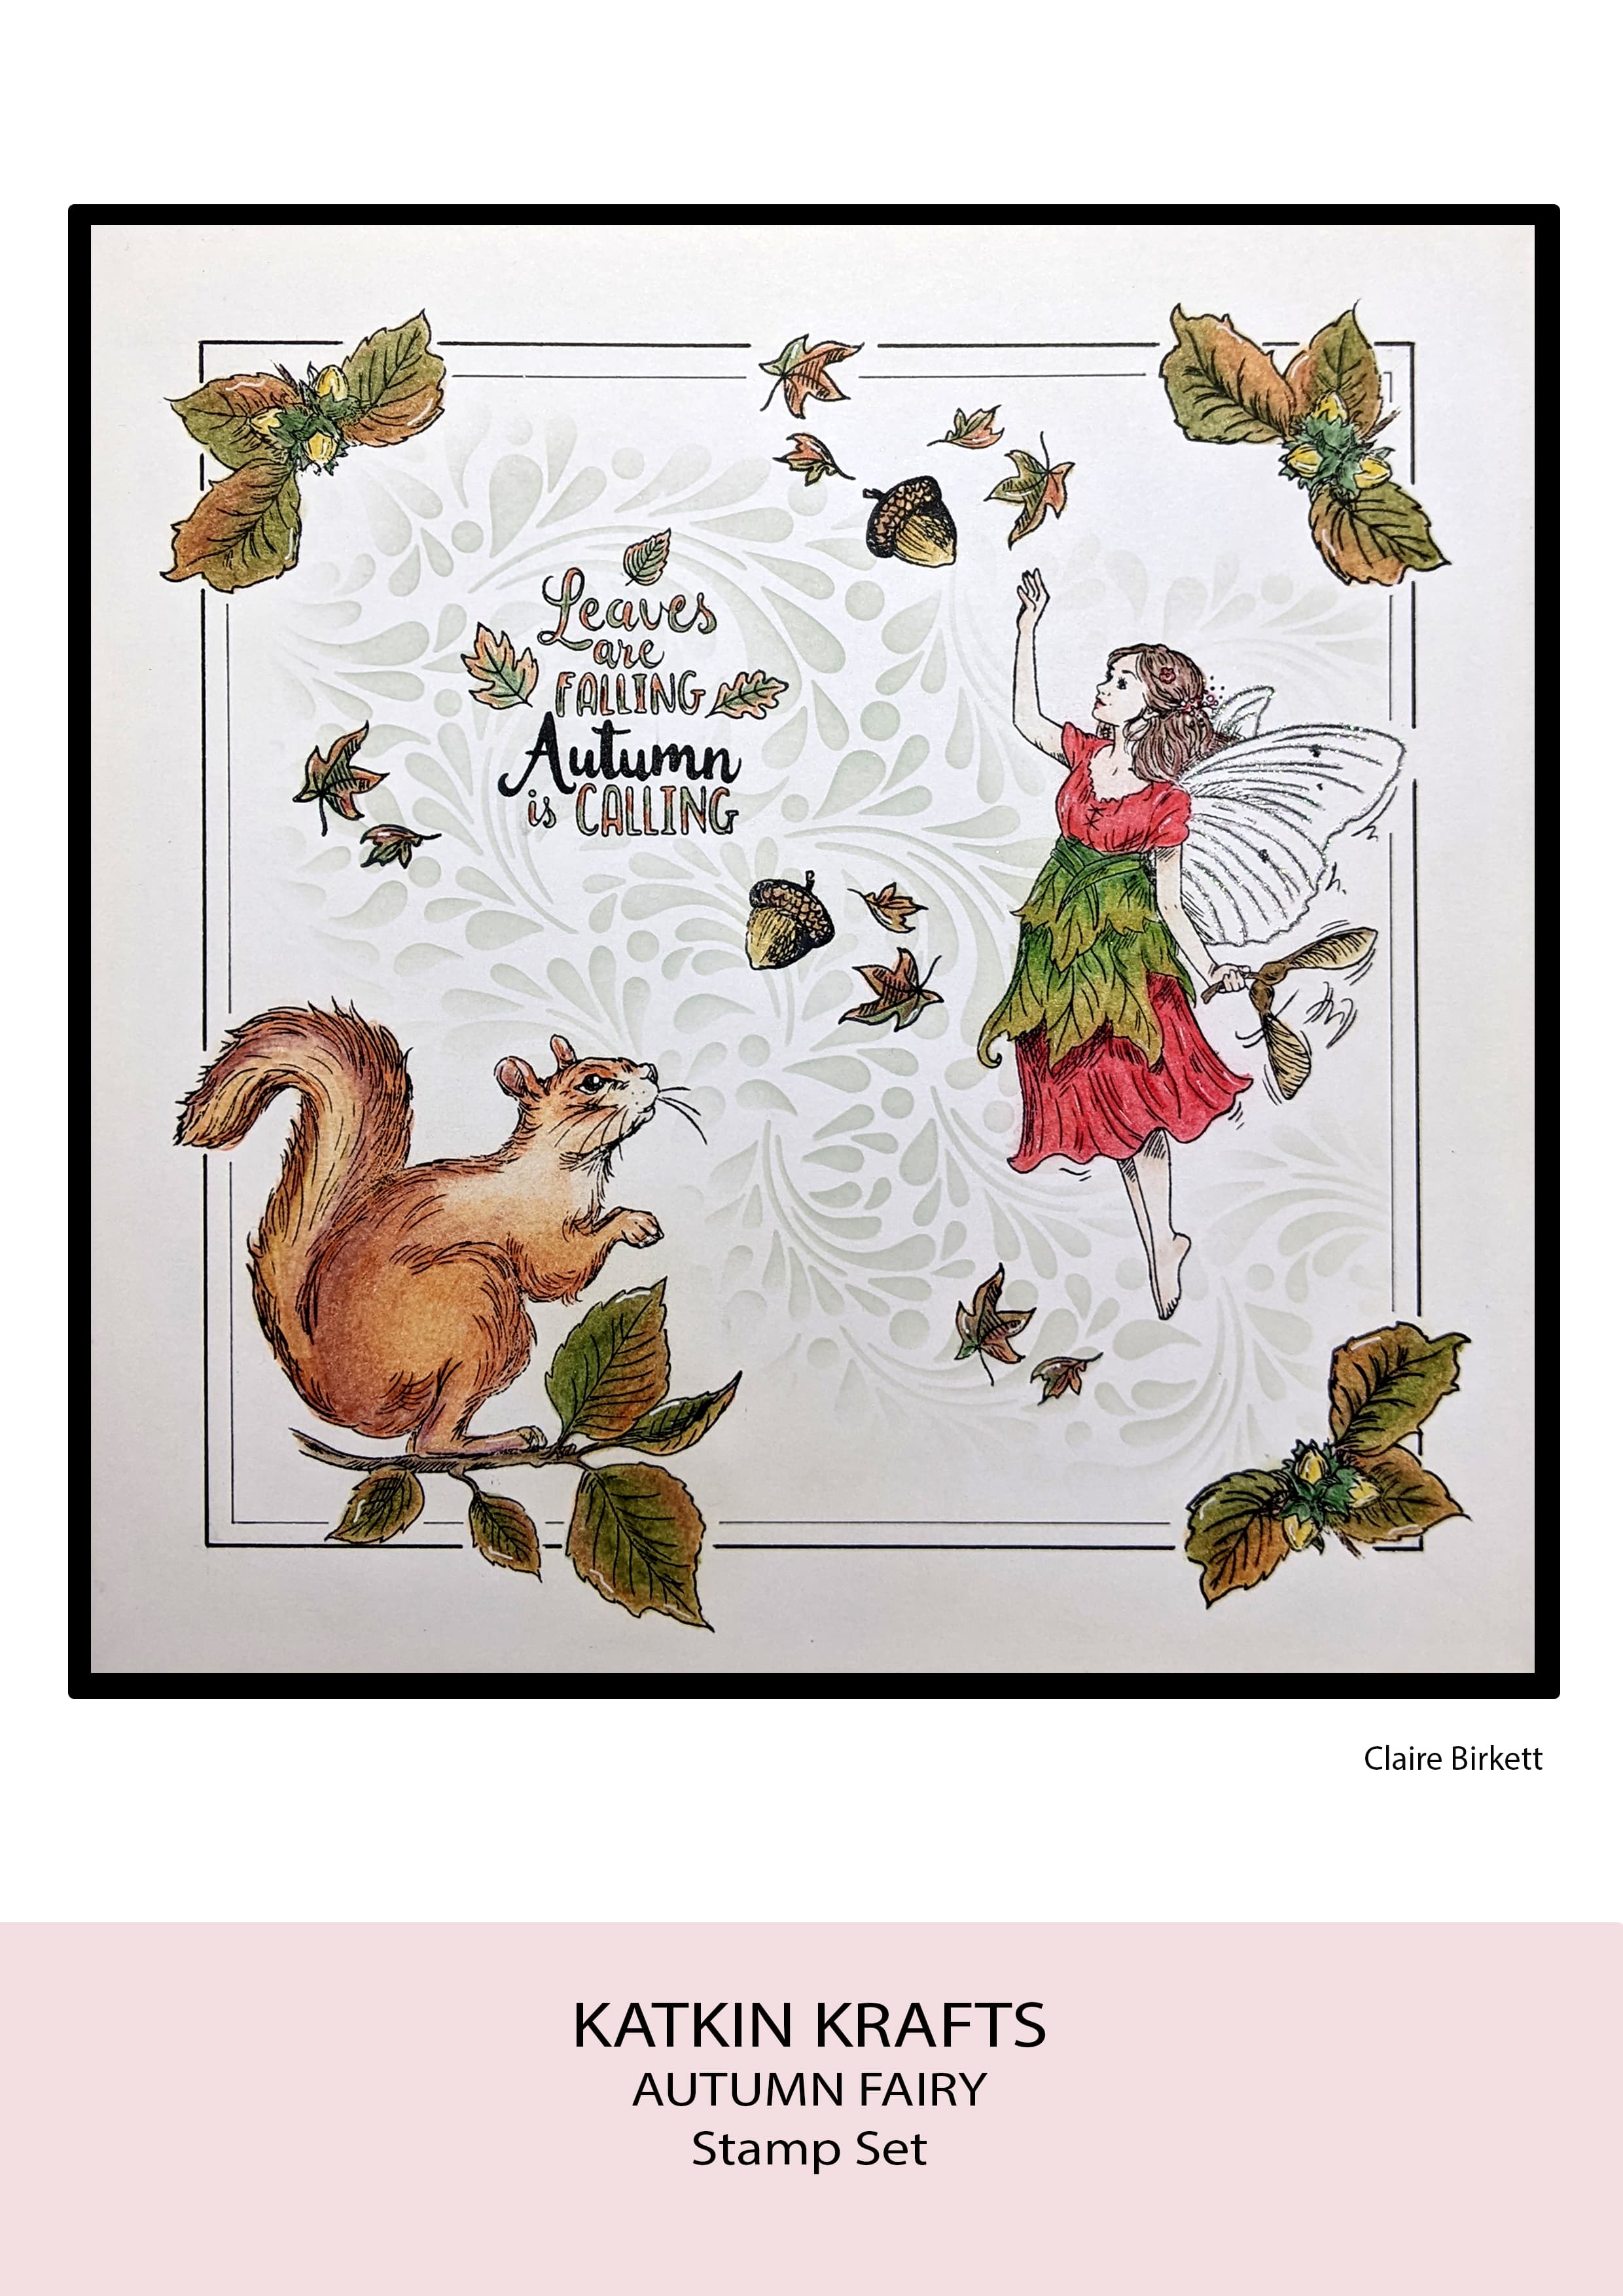 Katkin Krafts Autumn Fairy 6 in x 8 in Clear Stamp Set